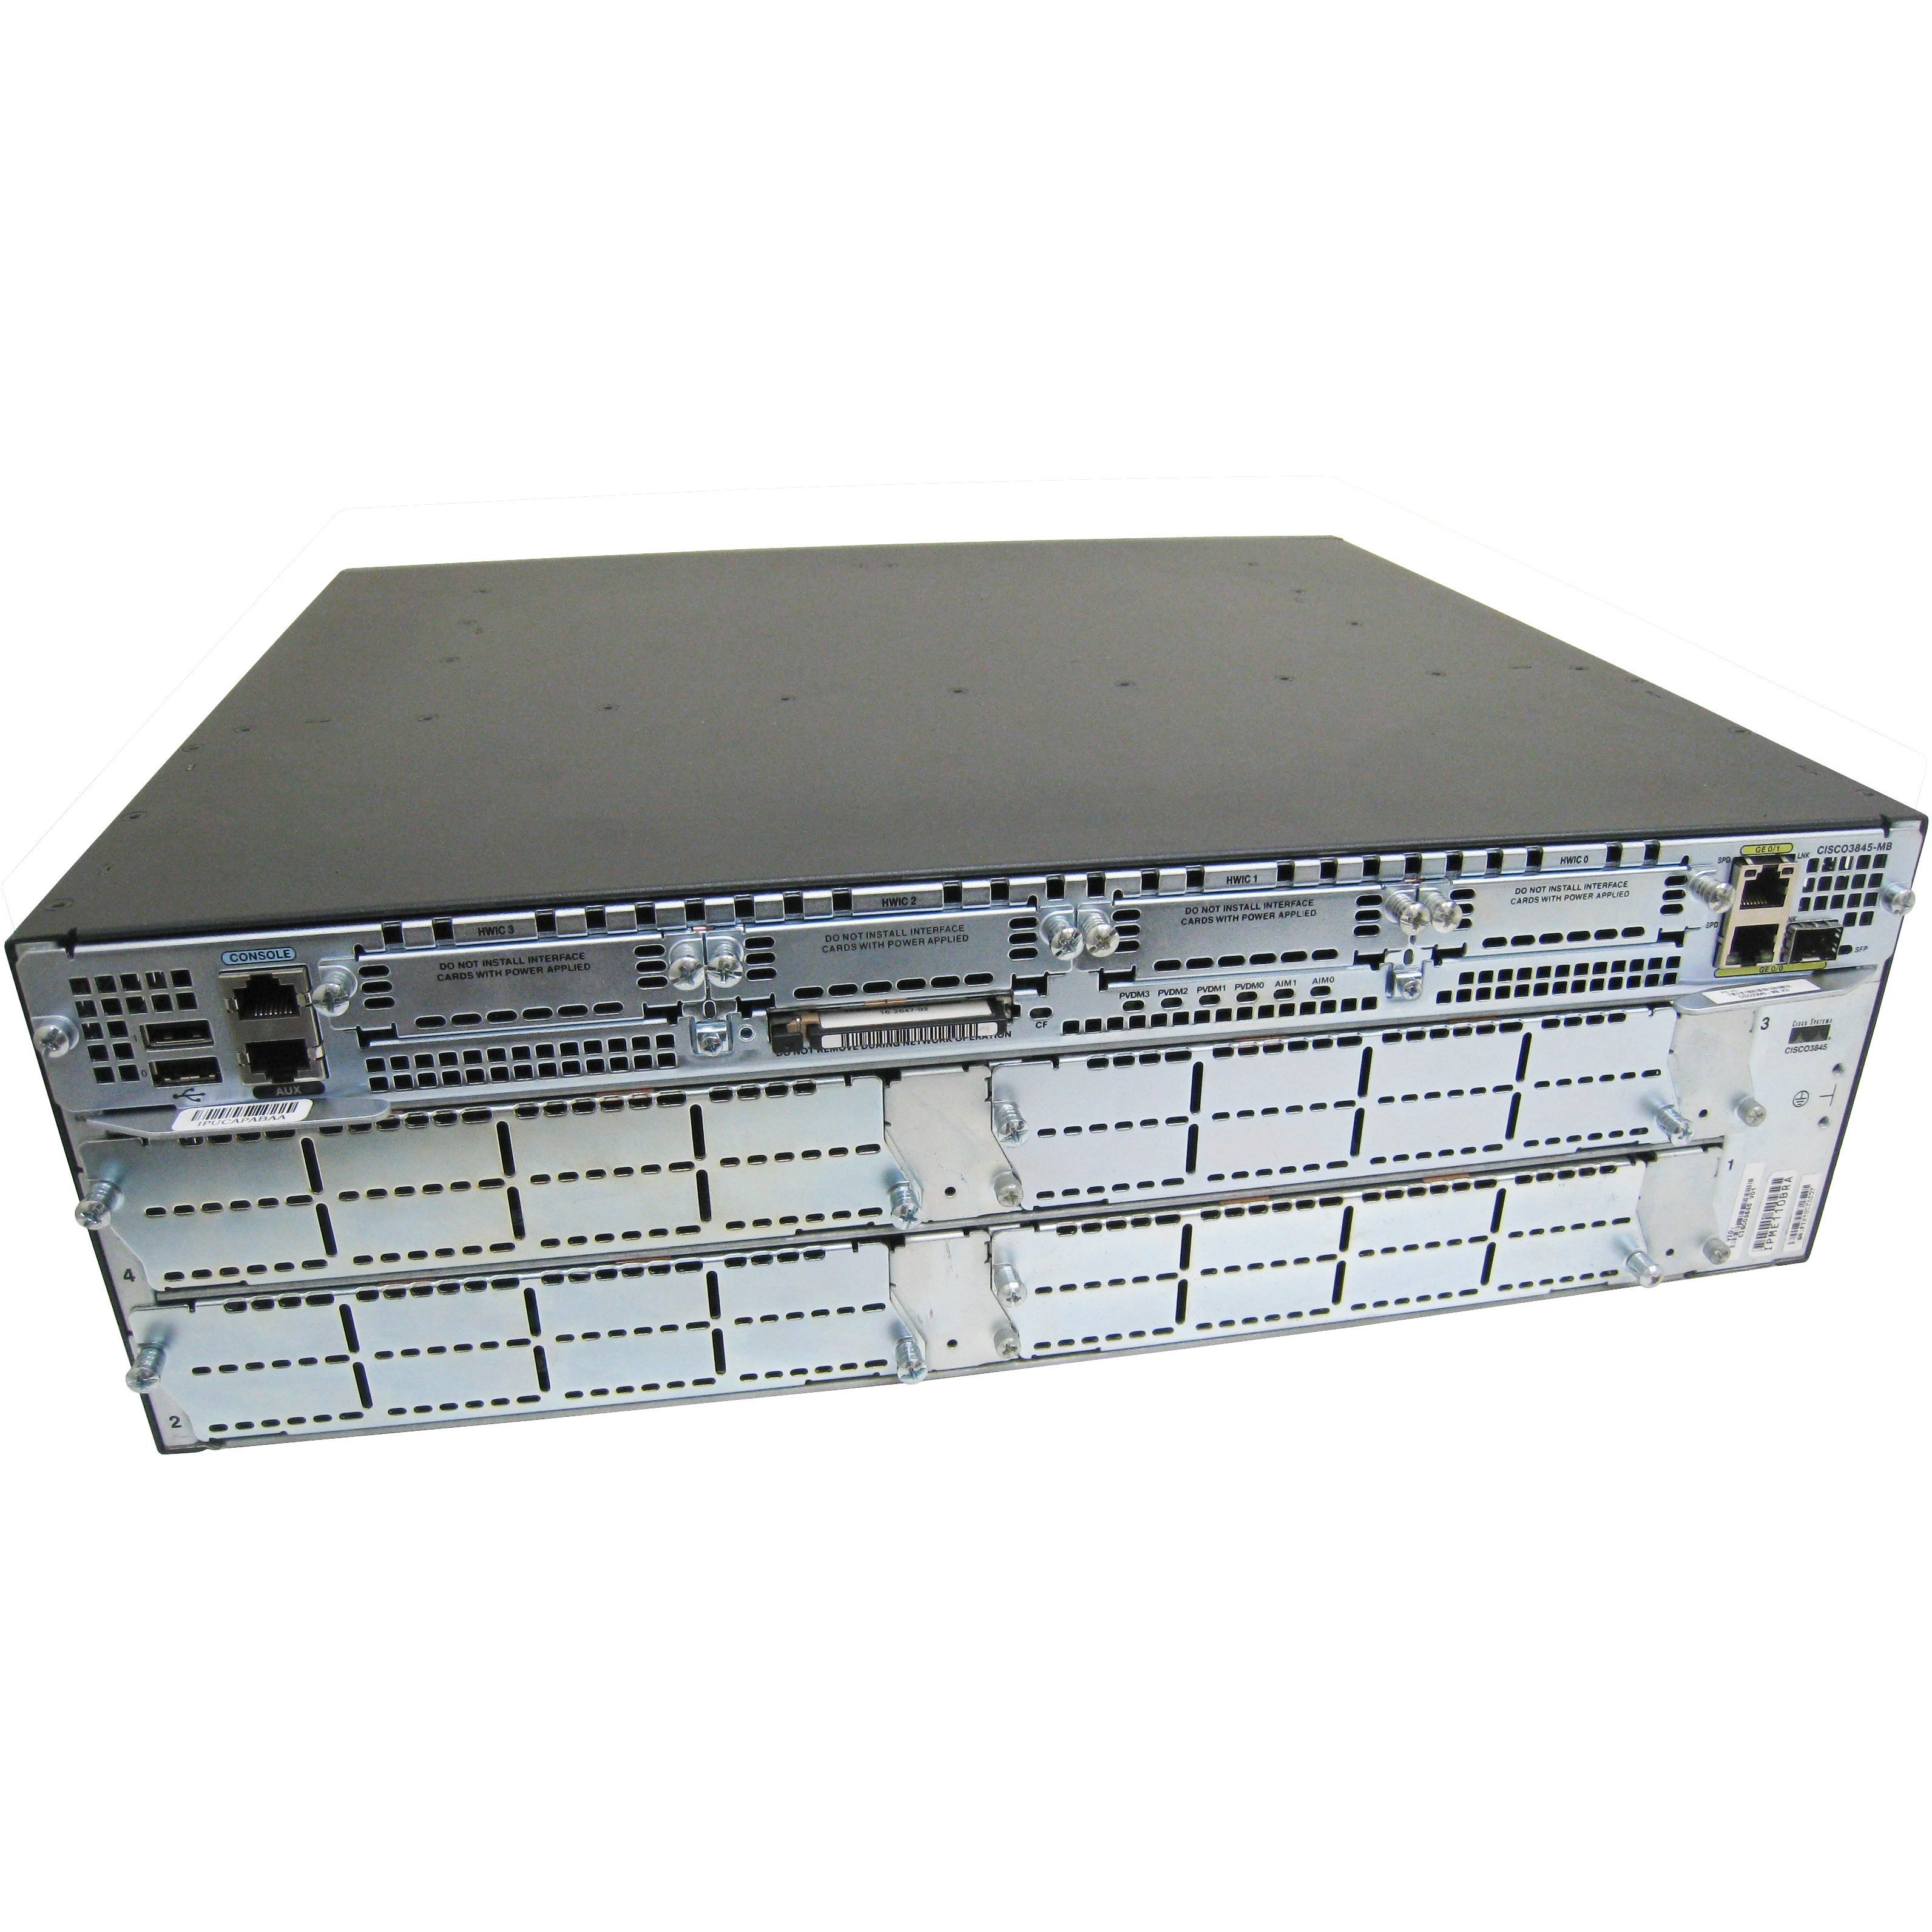 Cisco CISCO3845-V/K9